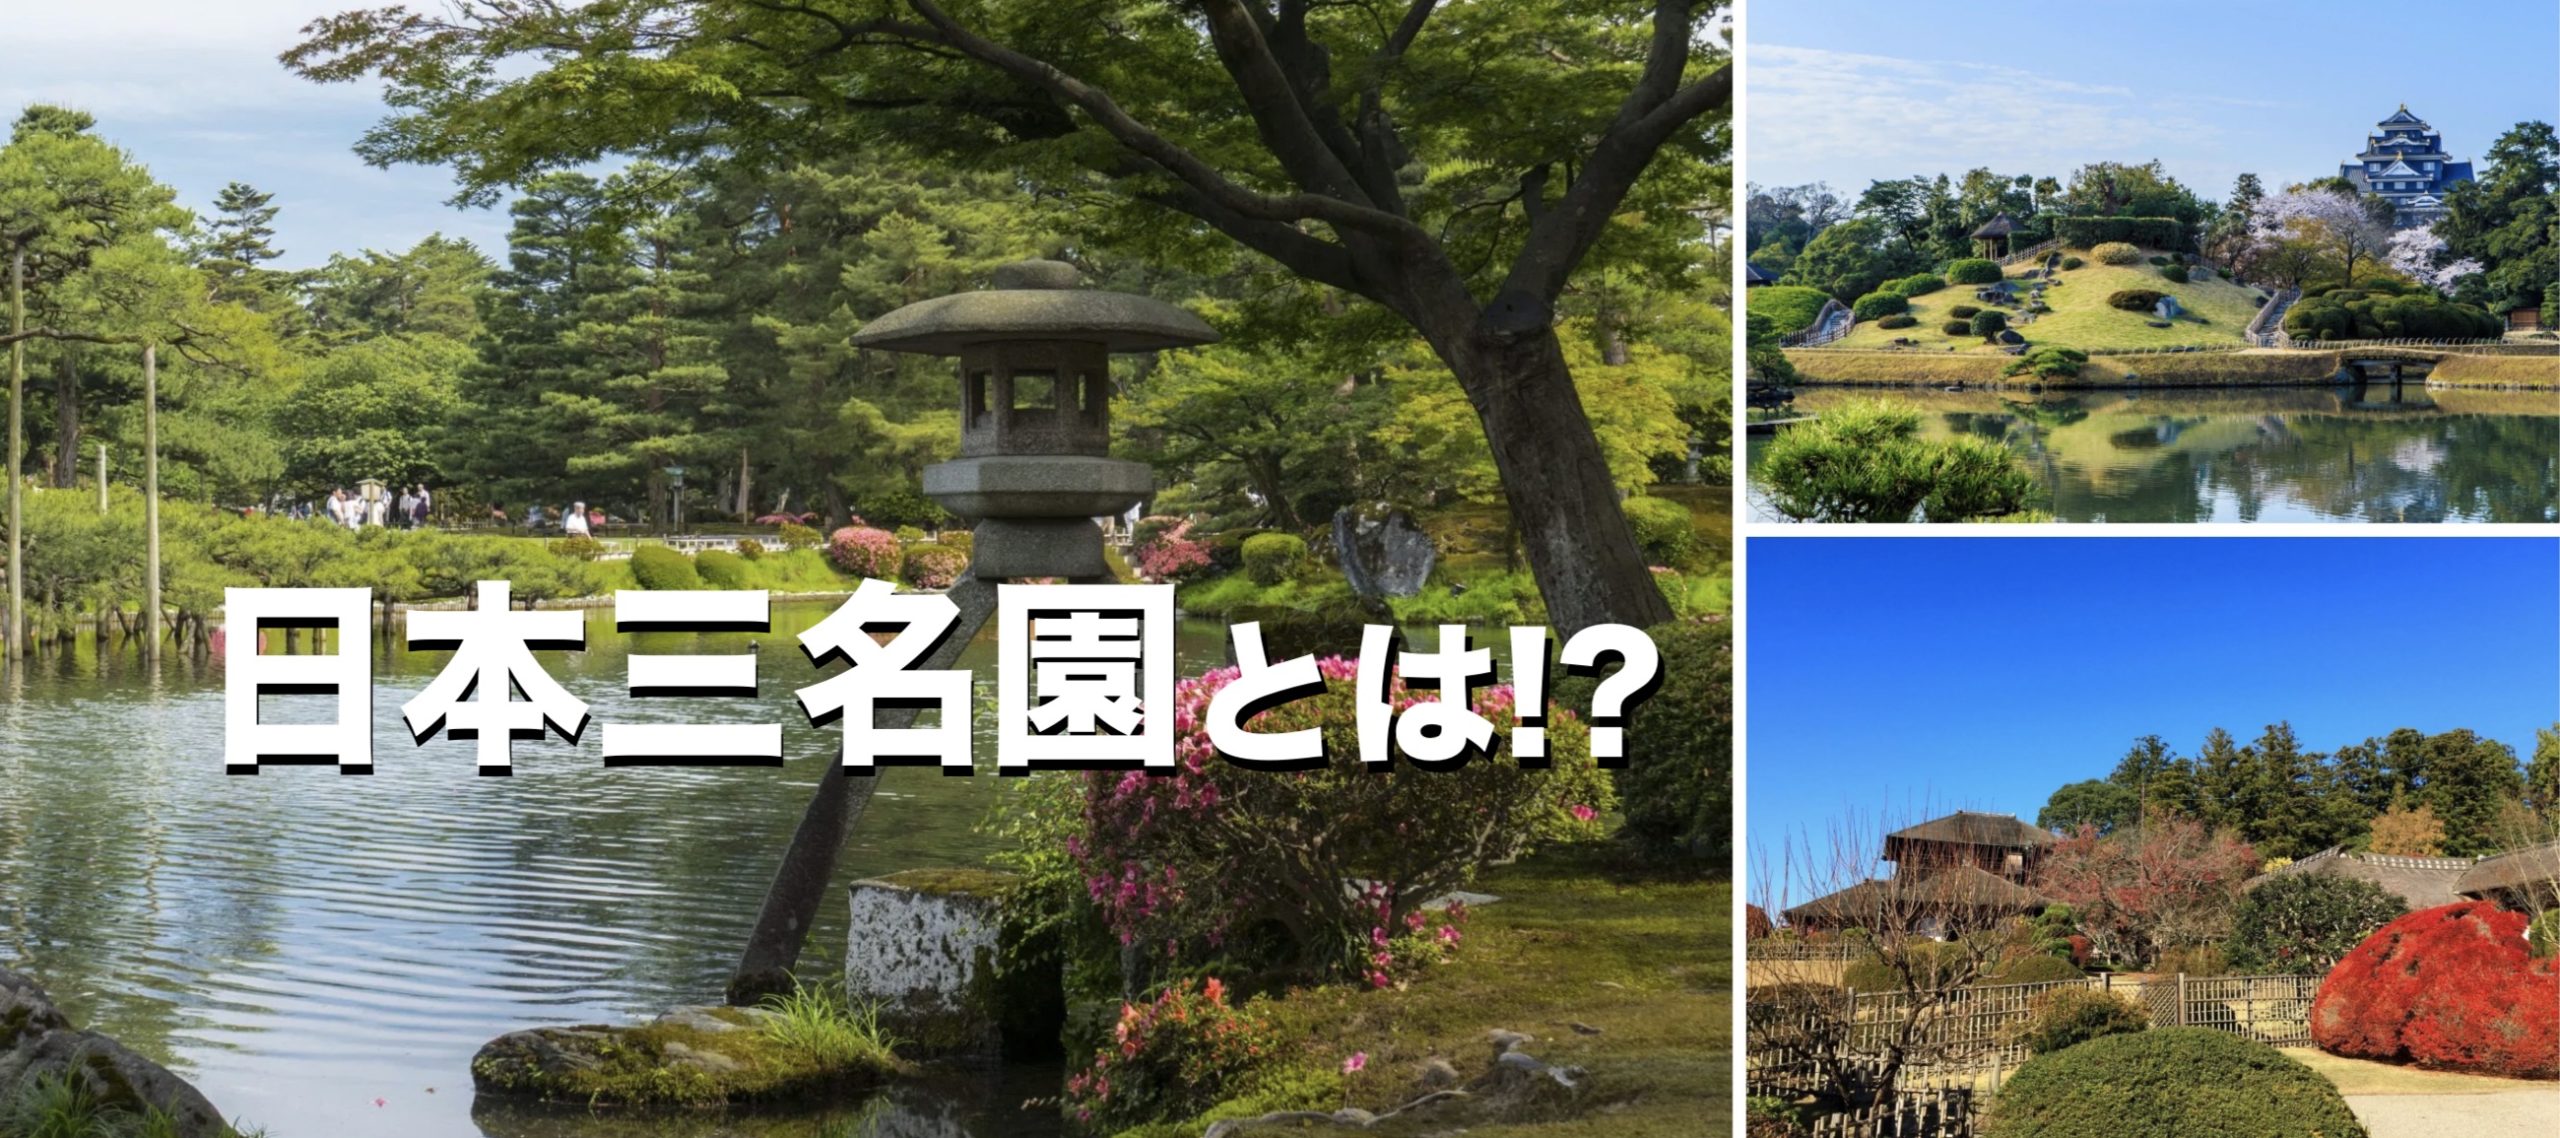 庭園 日本 3 大 和風の庭をご自宅に！ 日本庭園の様式や特徴と事例をご紹介